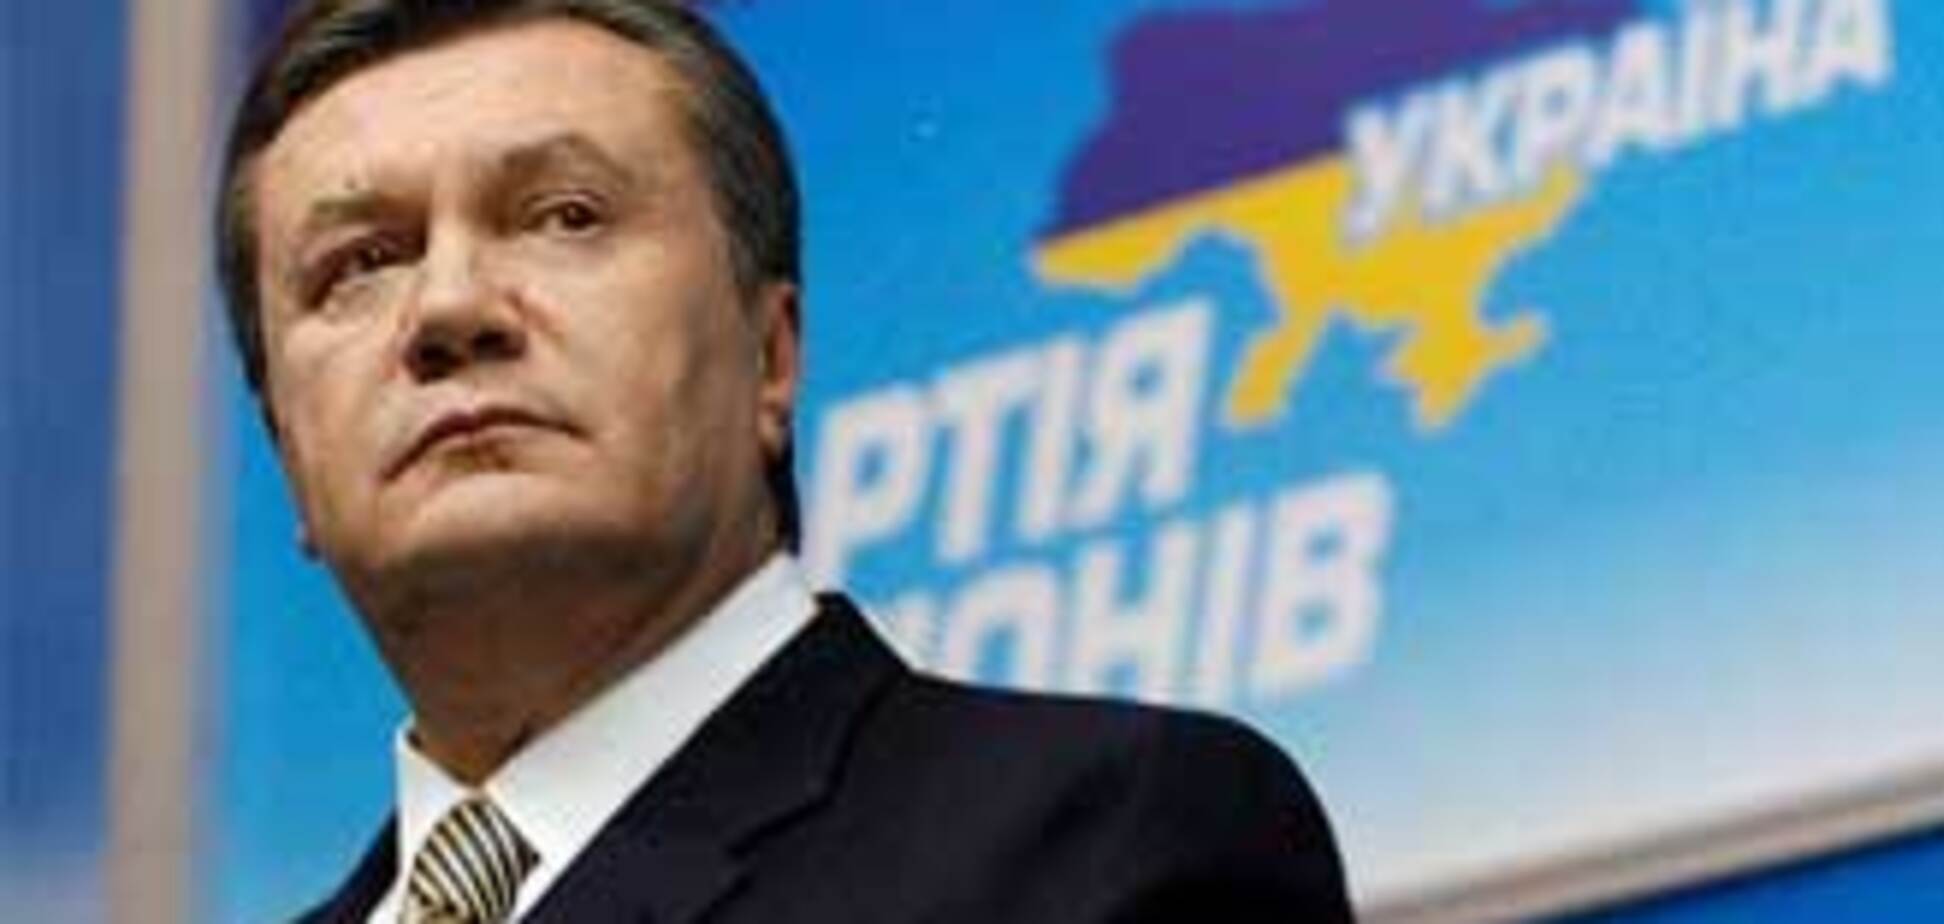 Януковичу на избирательном участке готовили стриптиз